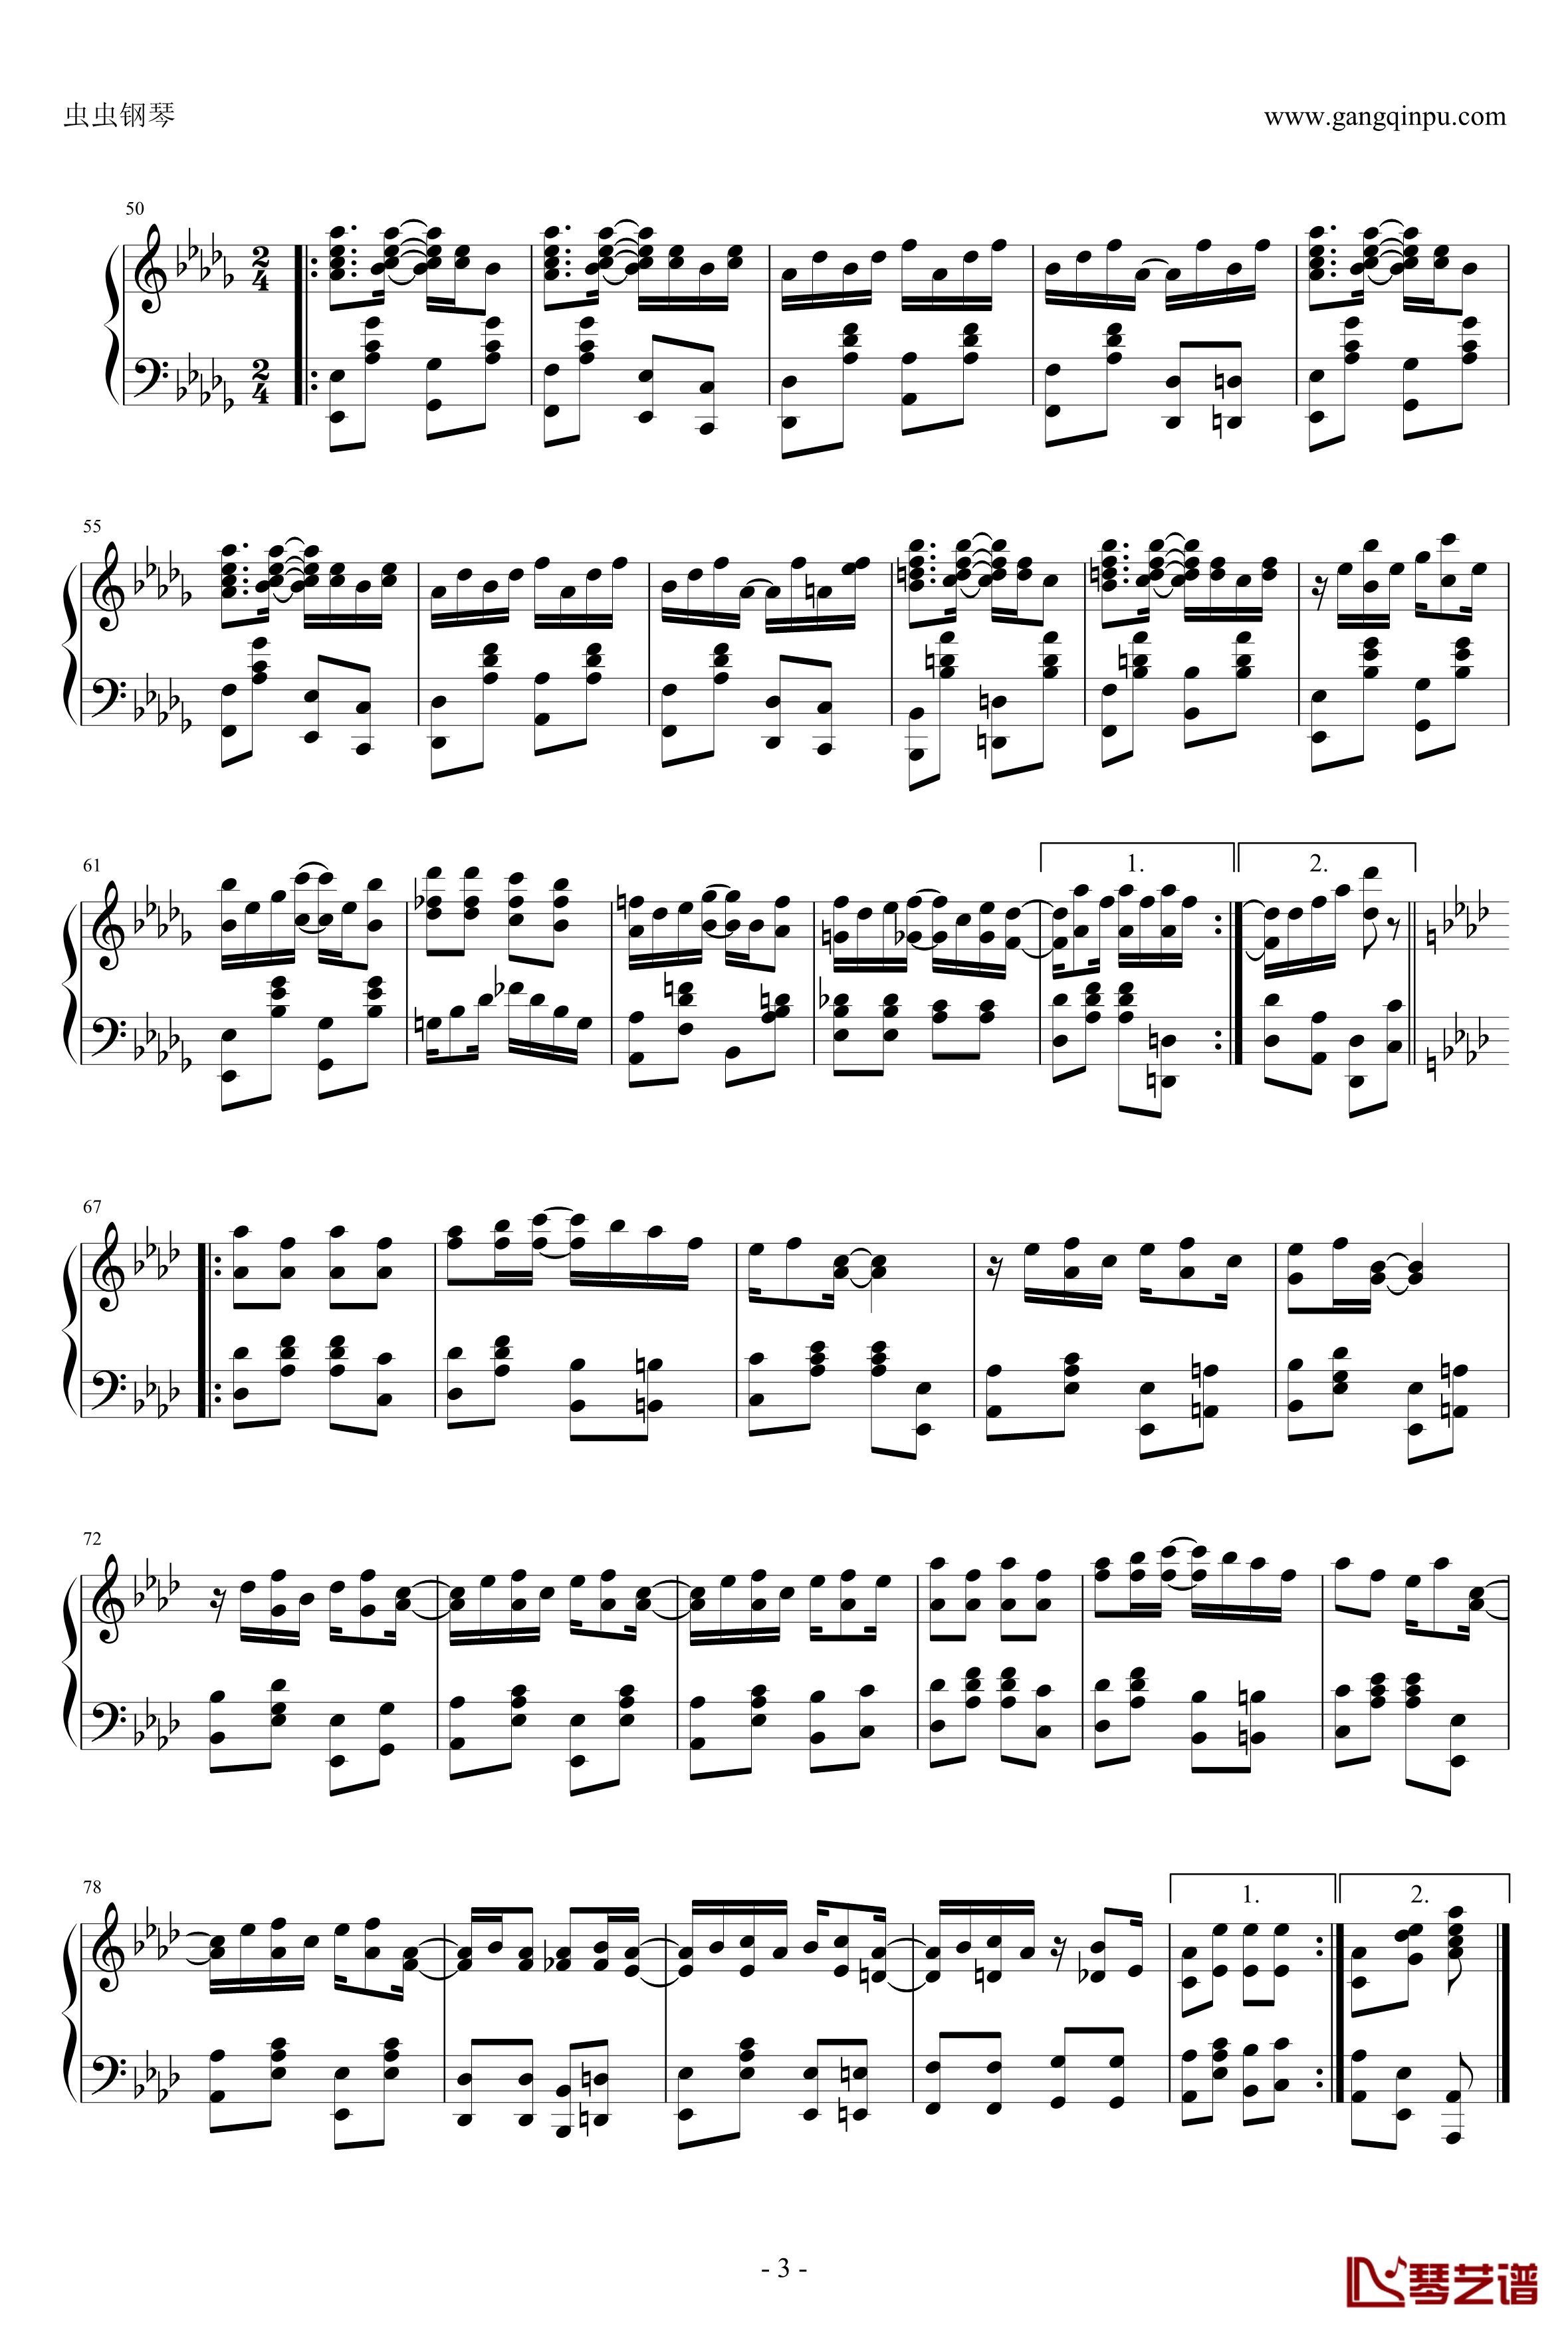 枫叶拉格钢琴谱-修订-斯科特 乔普林3